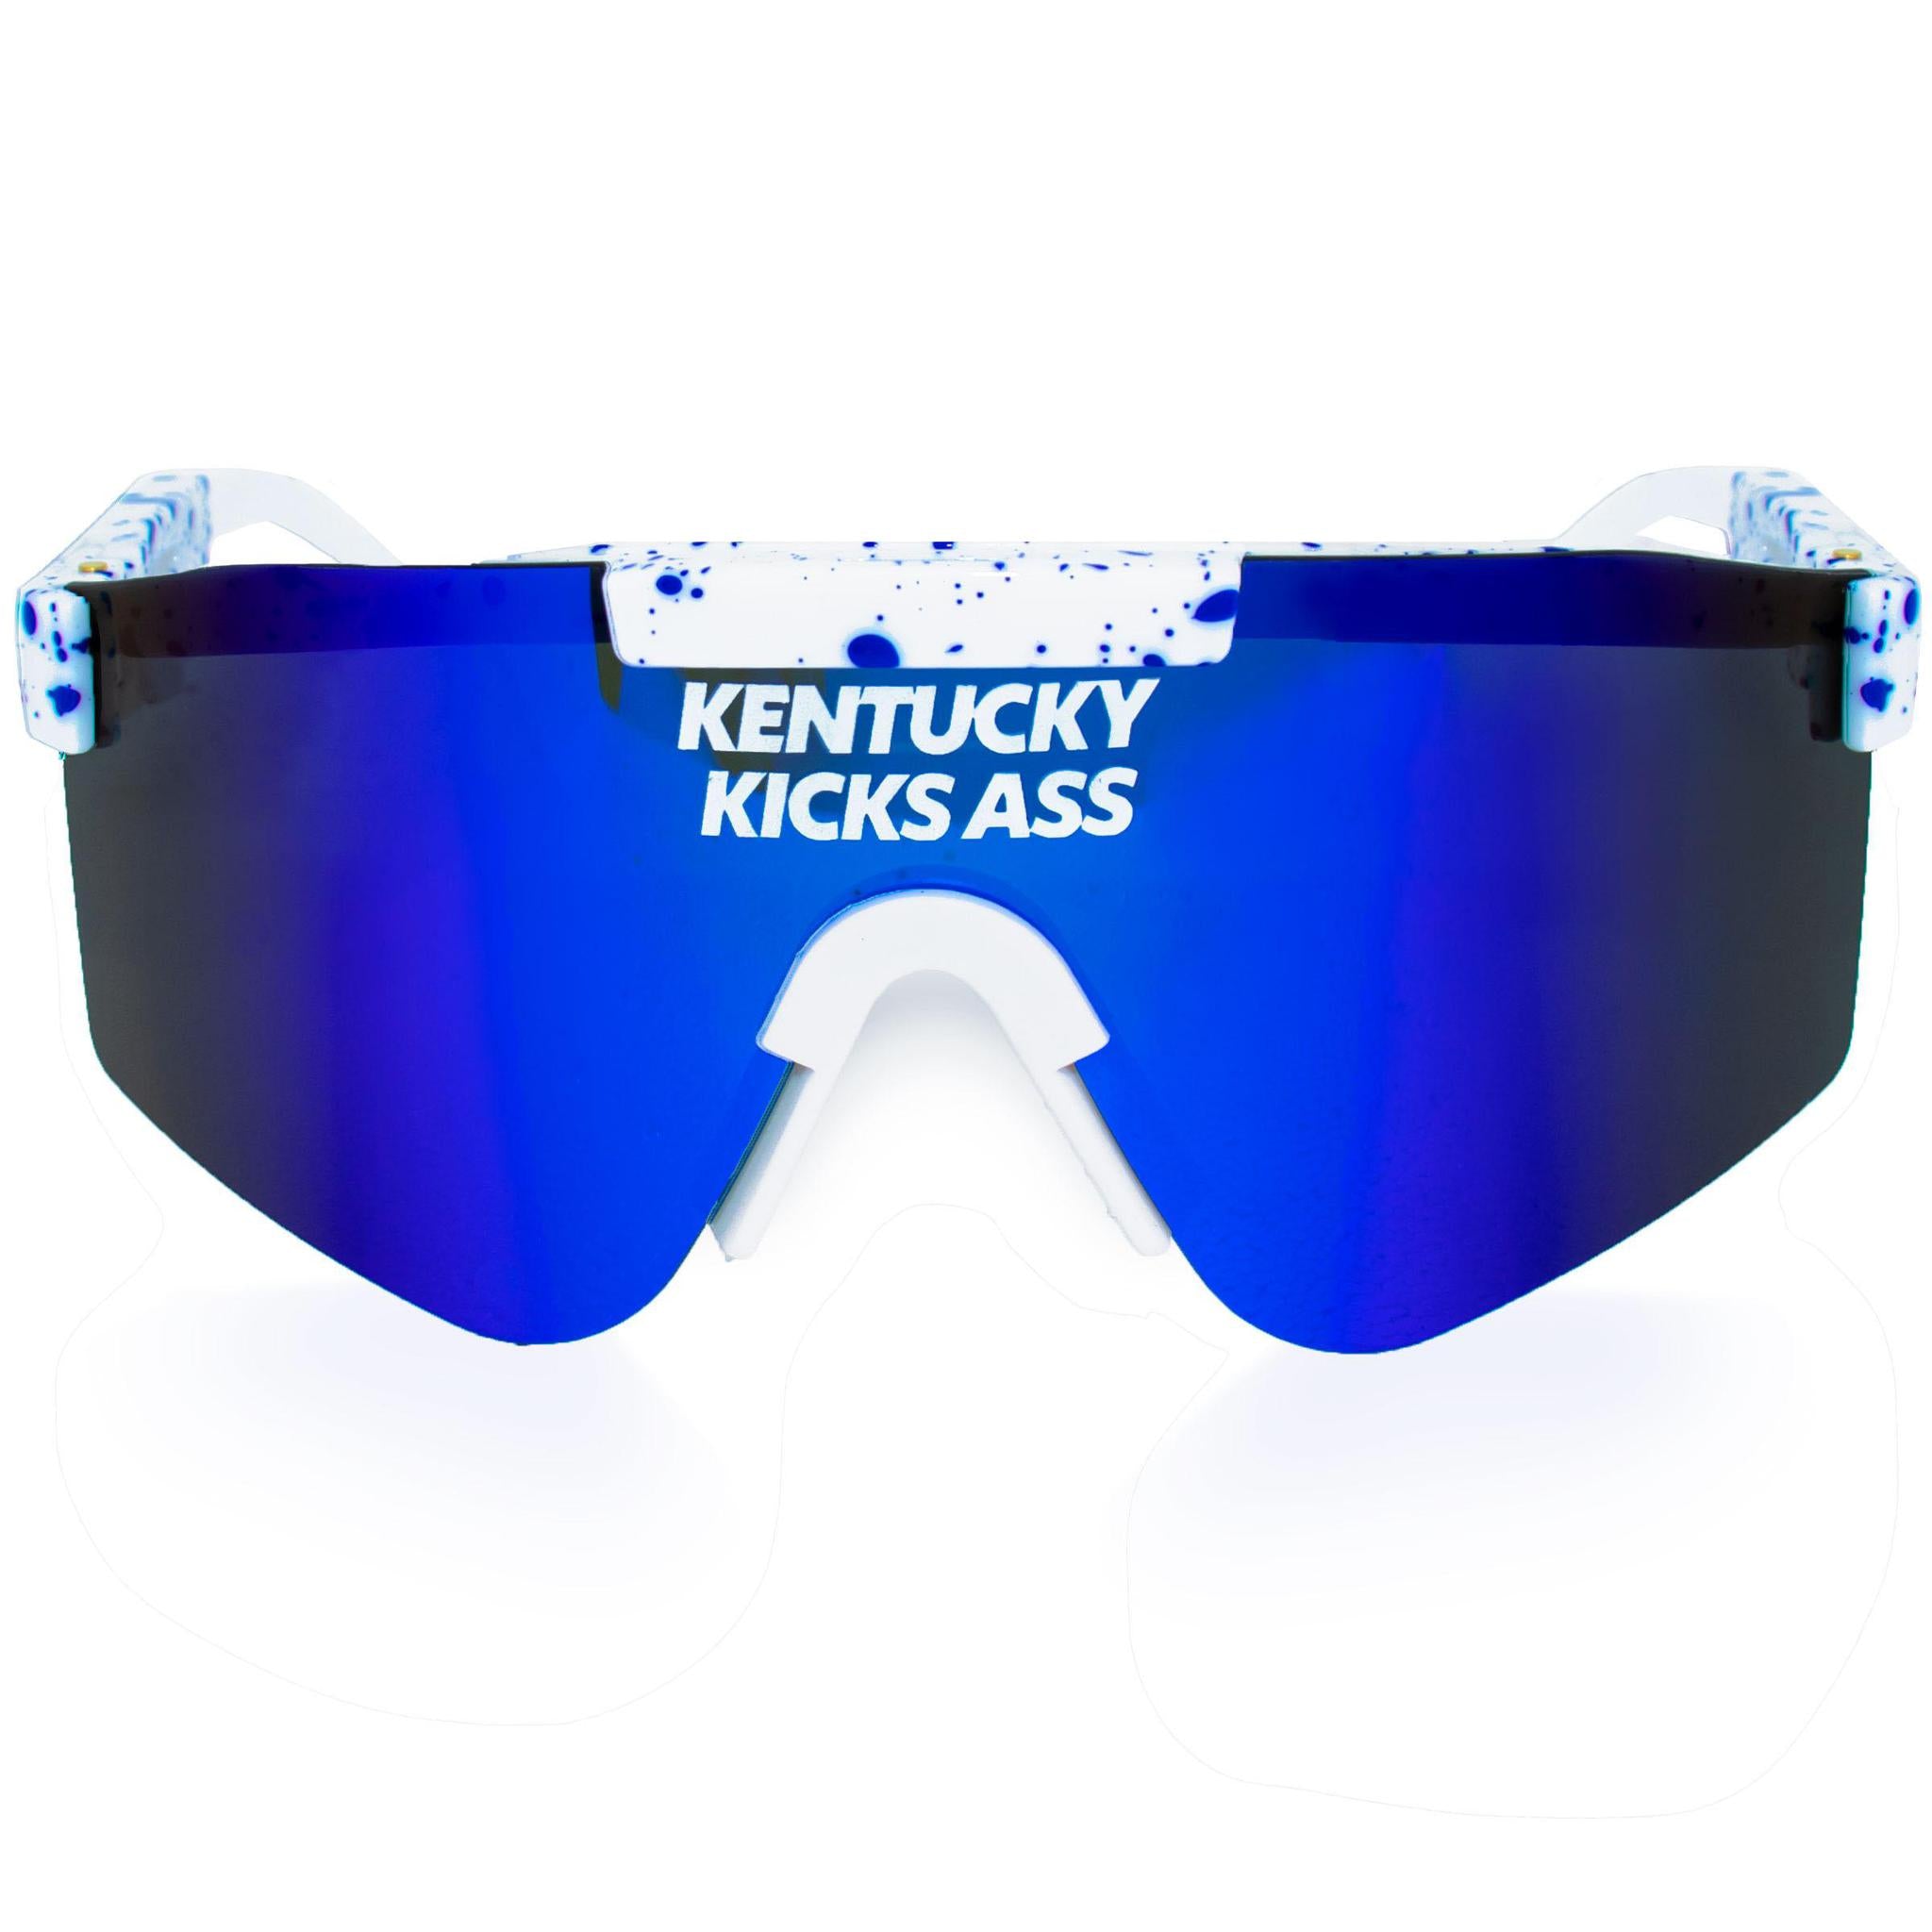 Kentucky Kicks Ass Sunglasses